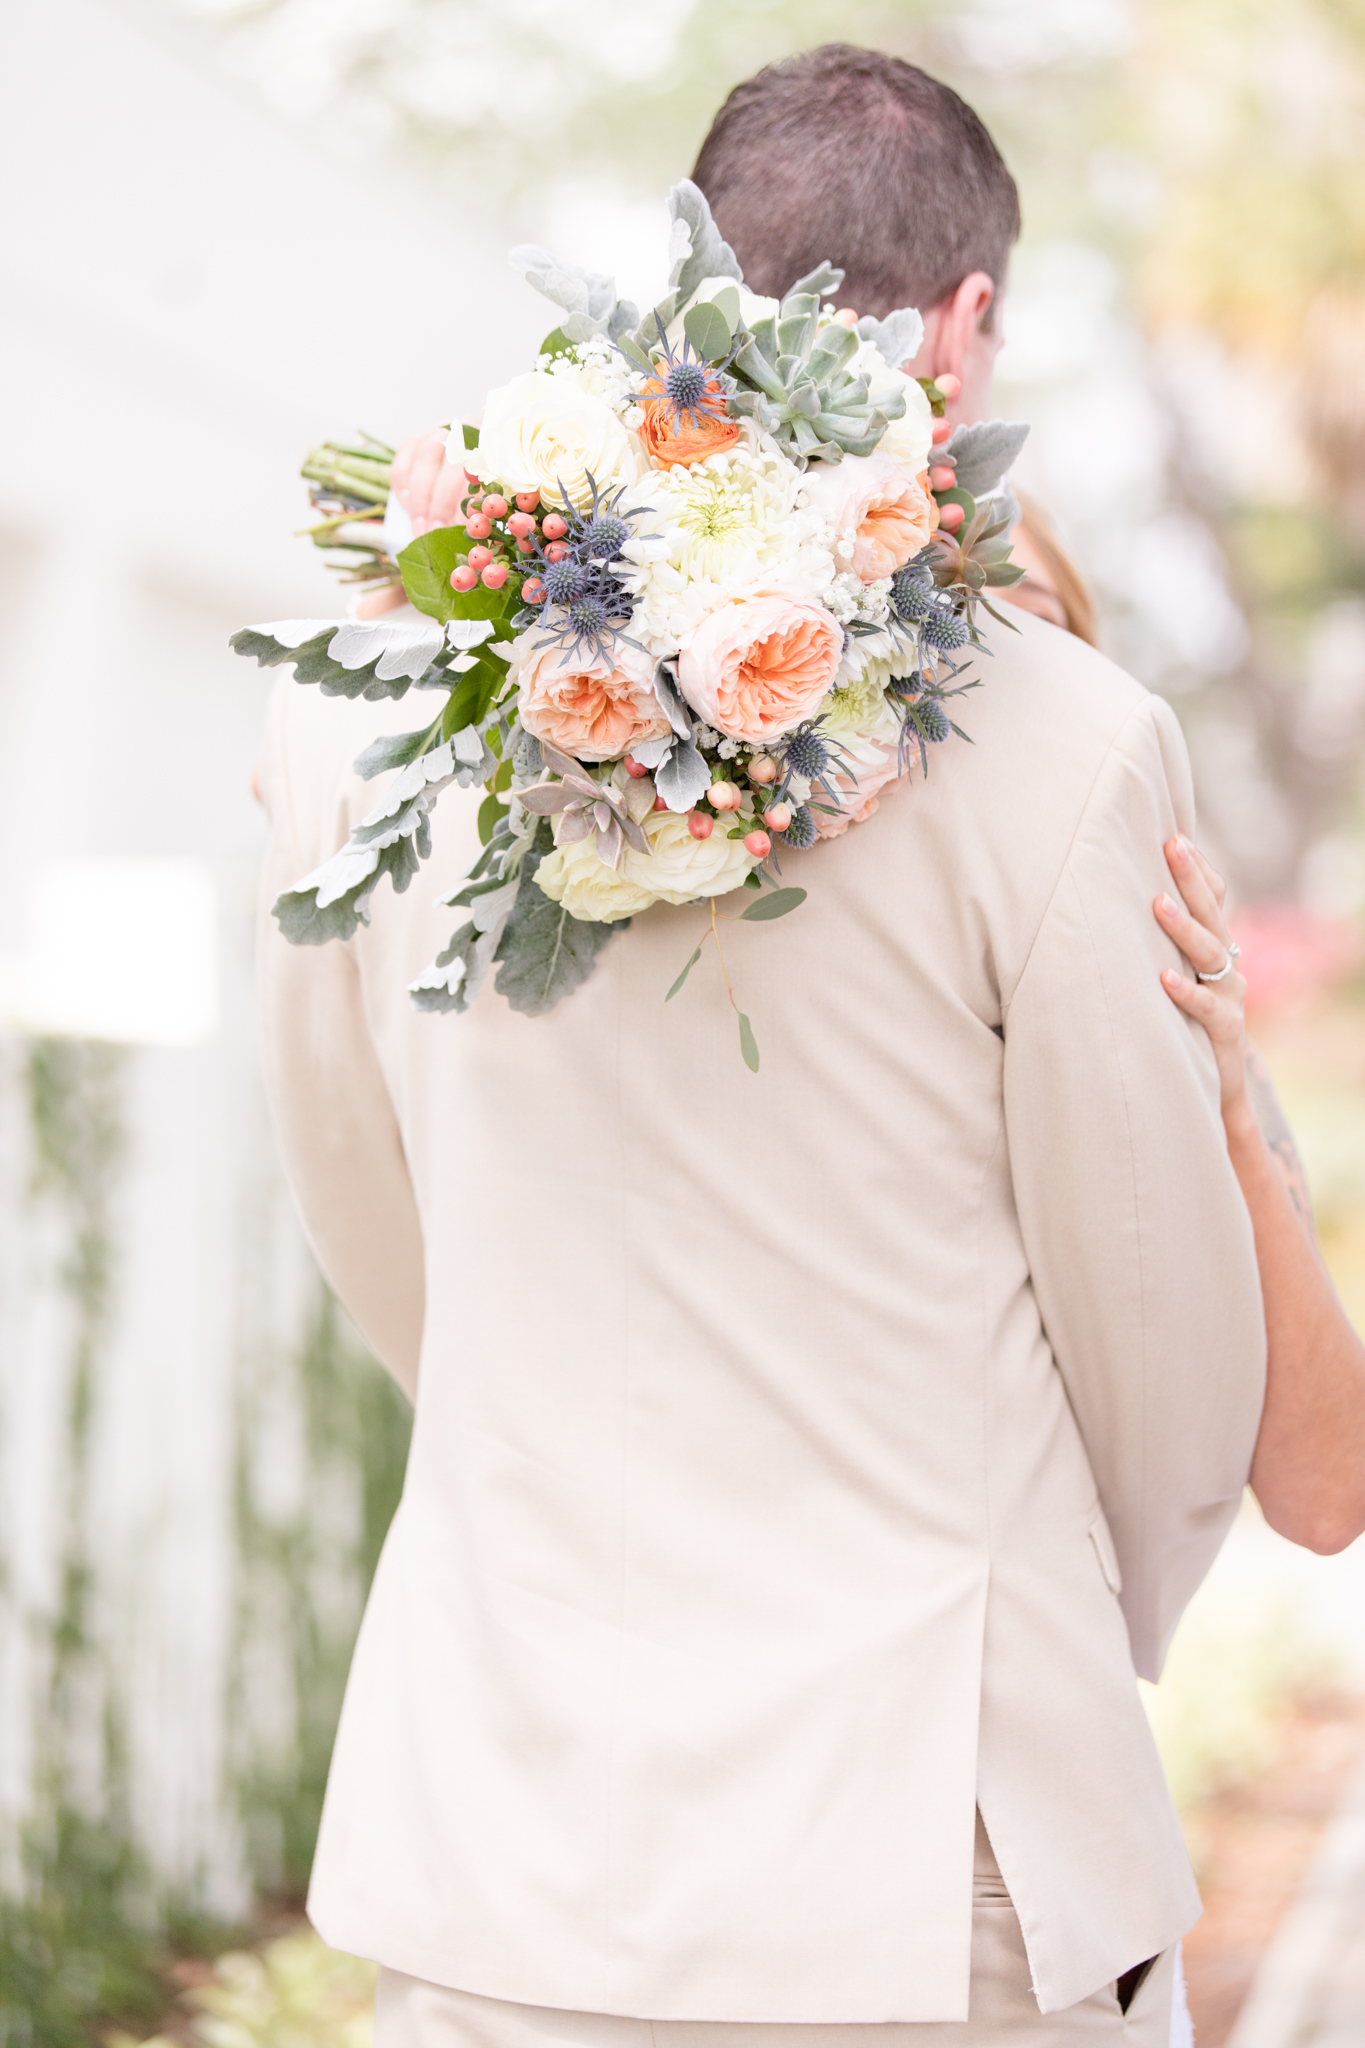 Bridal bouquet overe groom's shoulder.